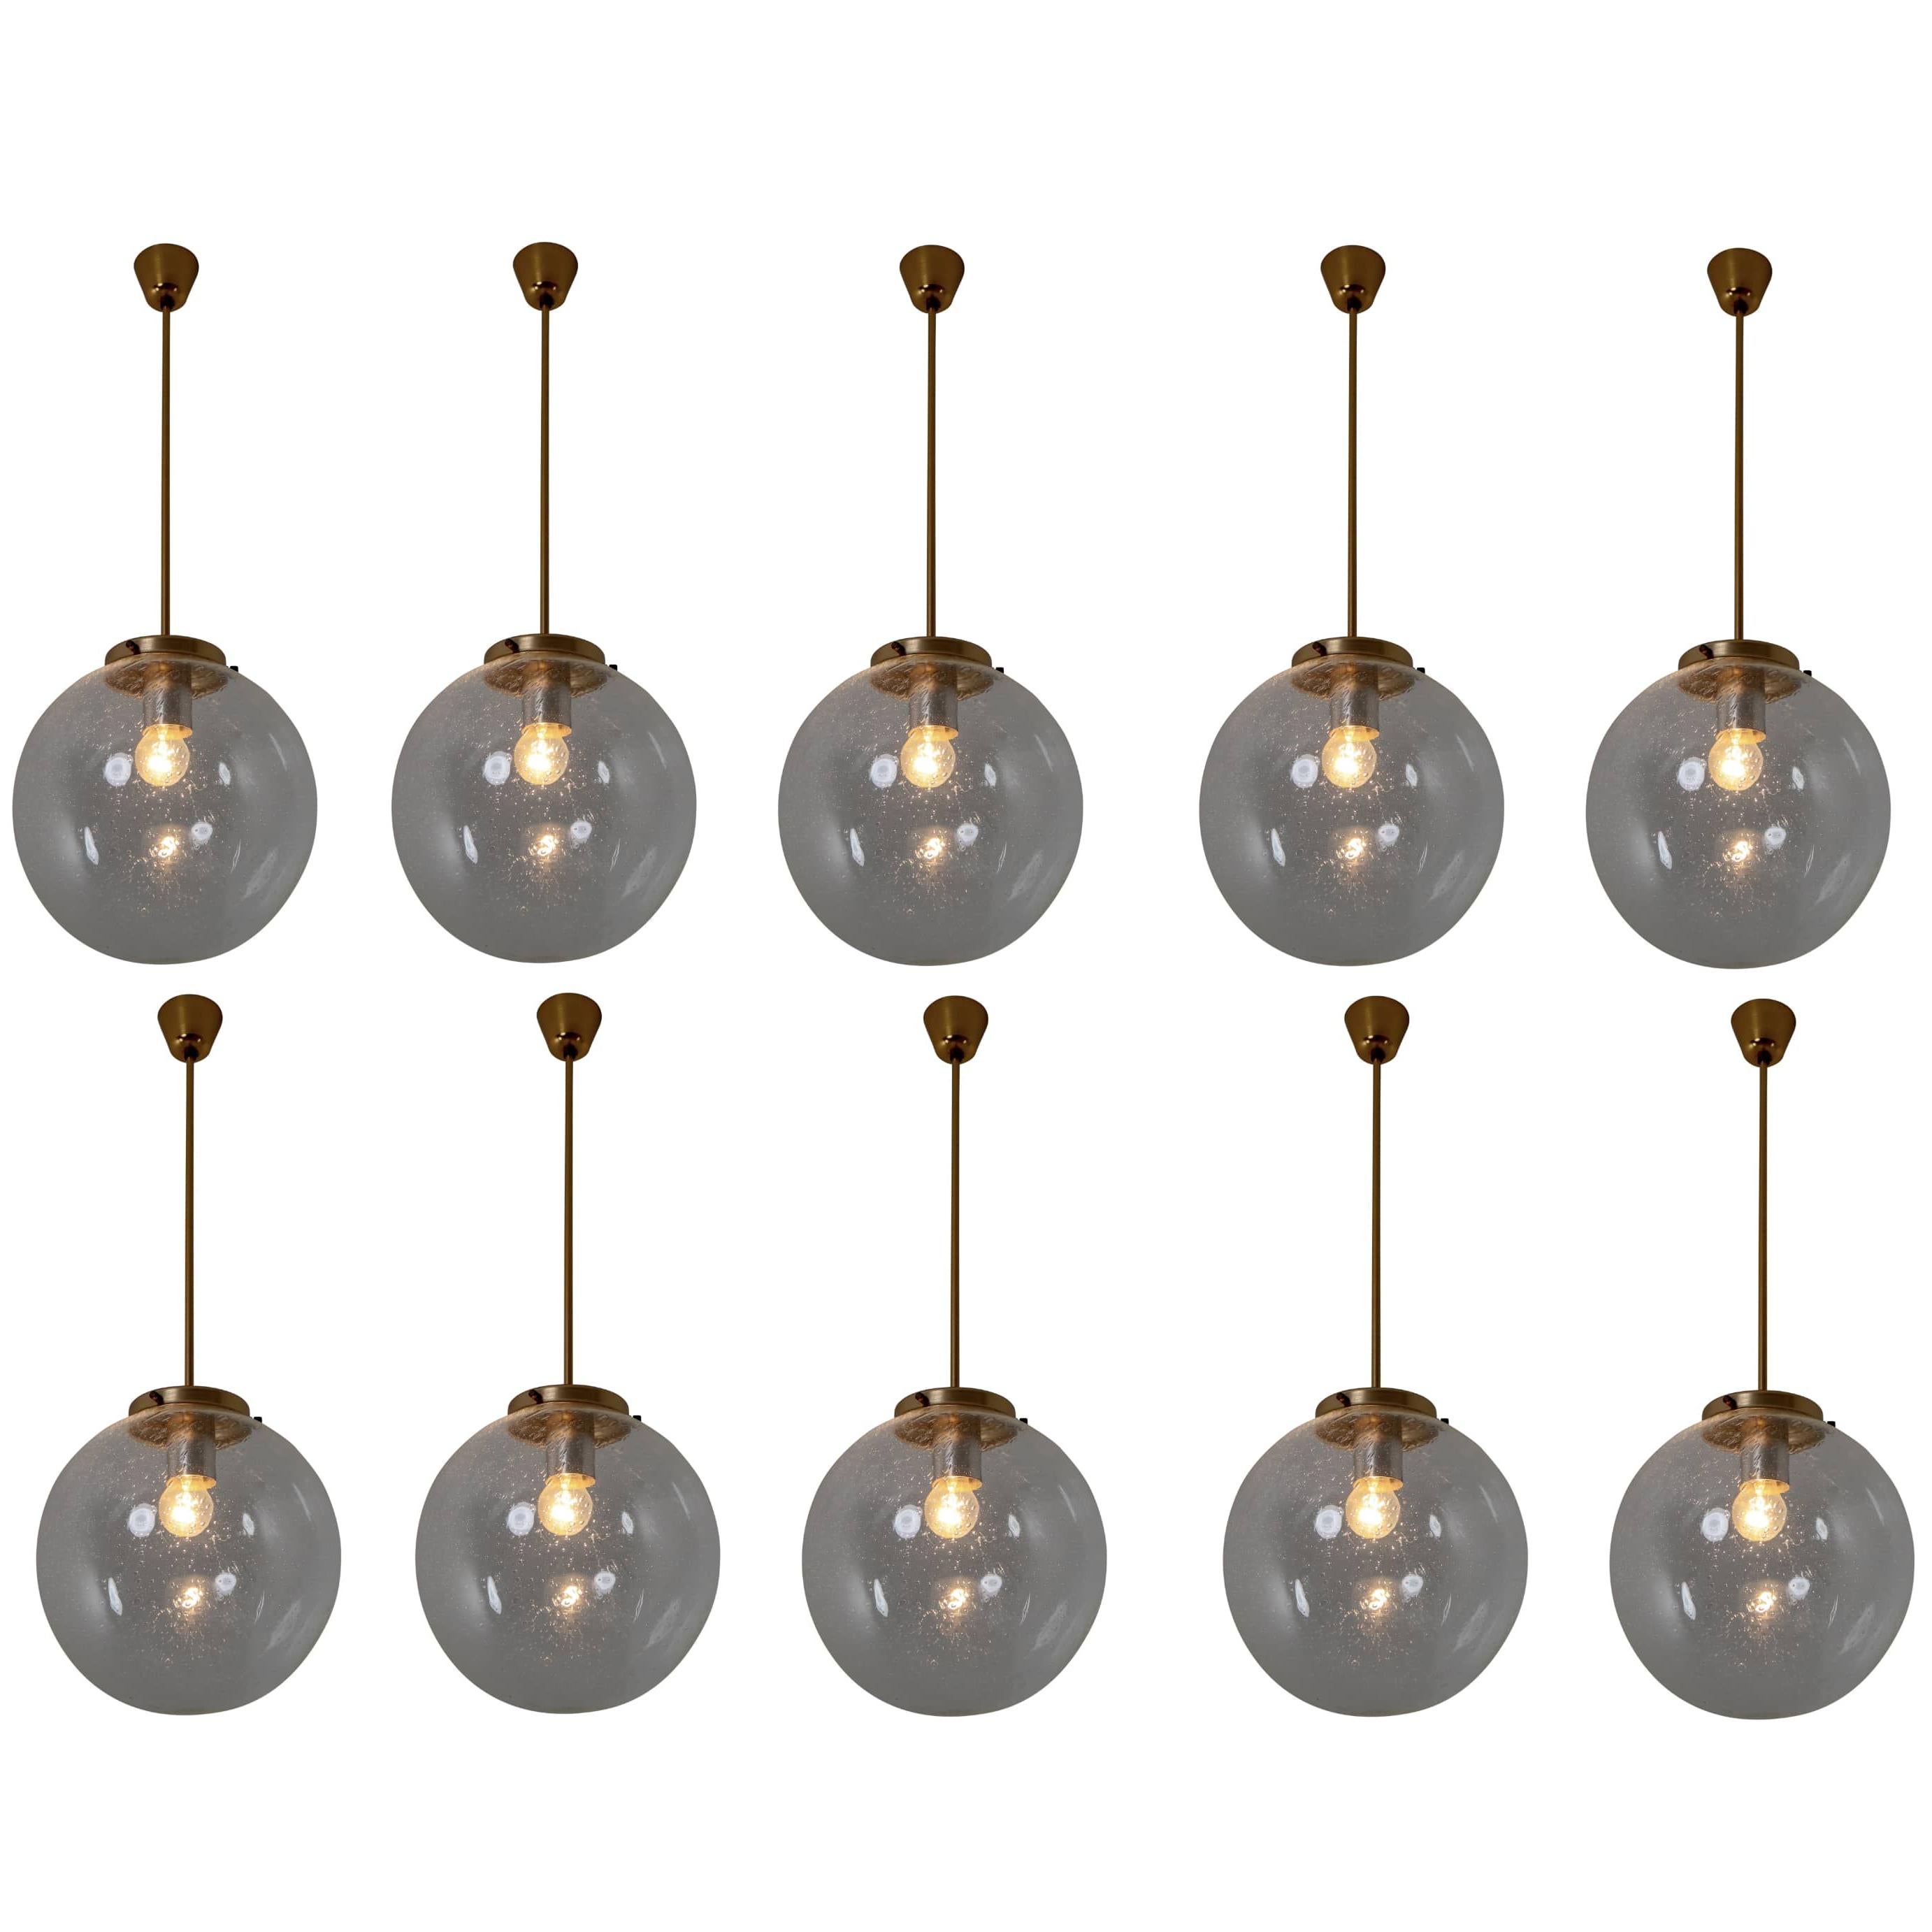 Set of Ten Midcentury Pendants in Handblown Glass and Copper Color Fixture